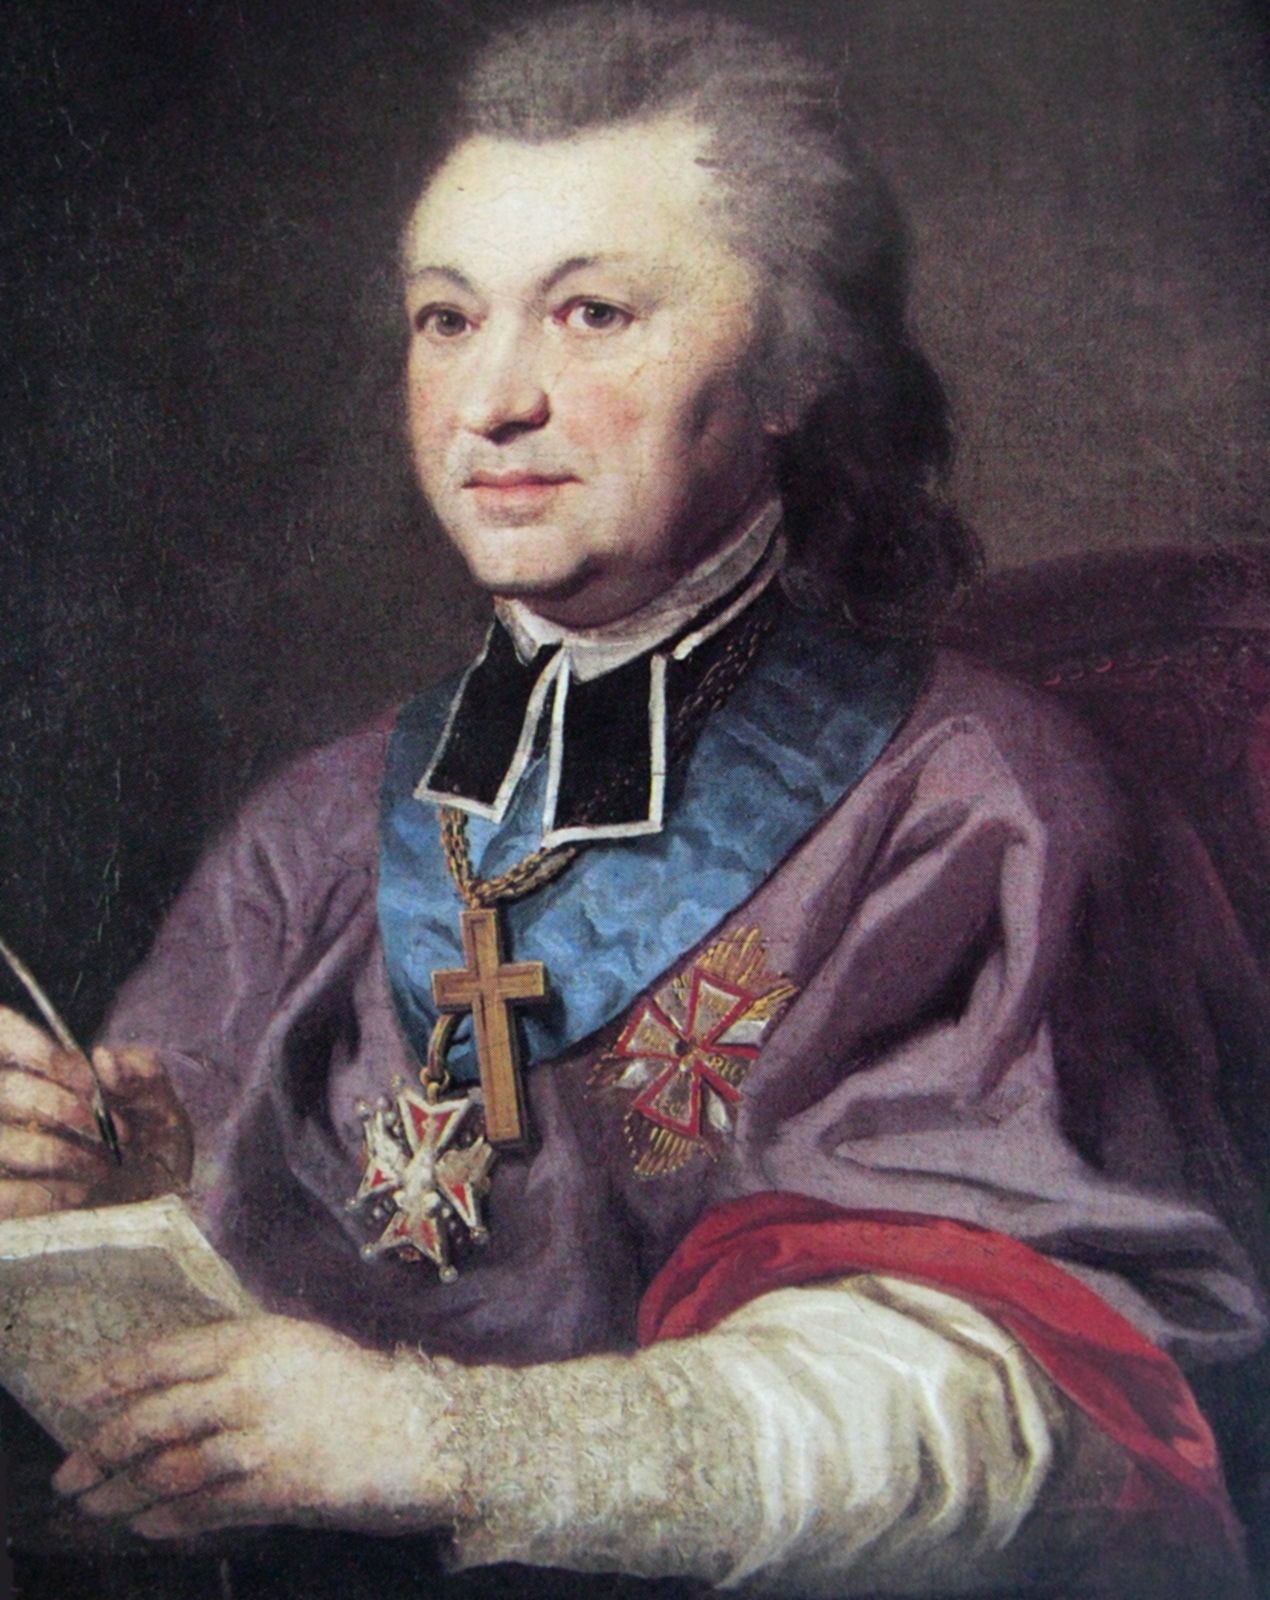 Józef Kazimierz Kossakowski Źródło: Józef Kazimierz Kossakowski, po 1780, domena publiczna.